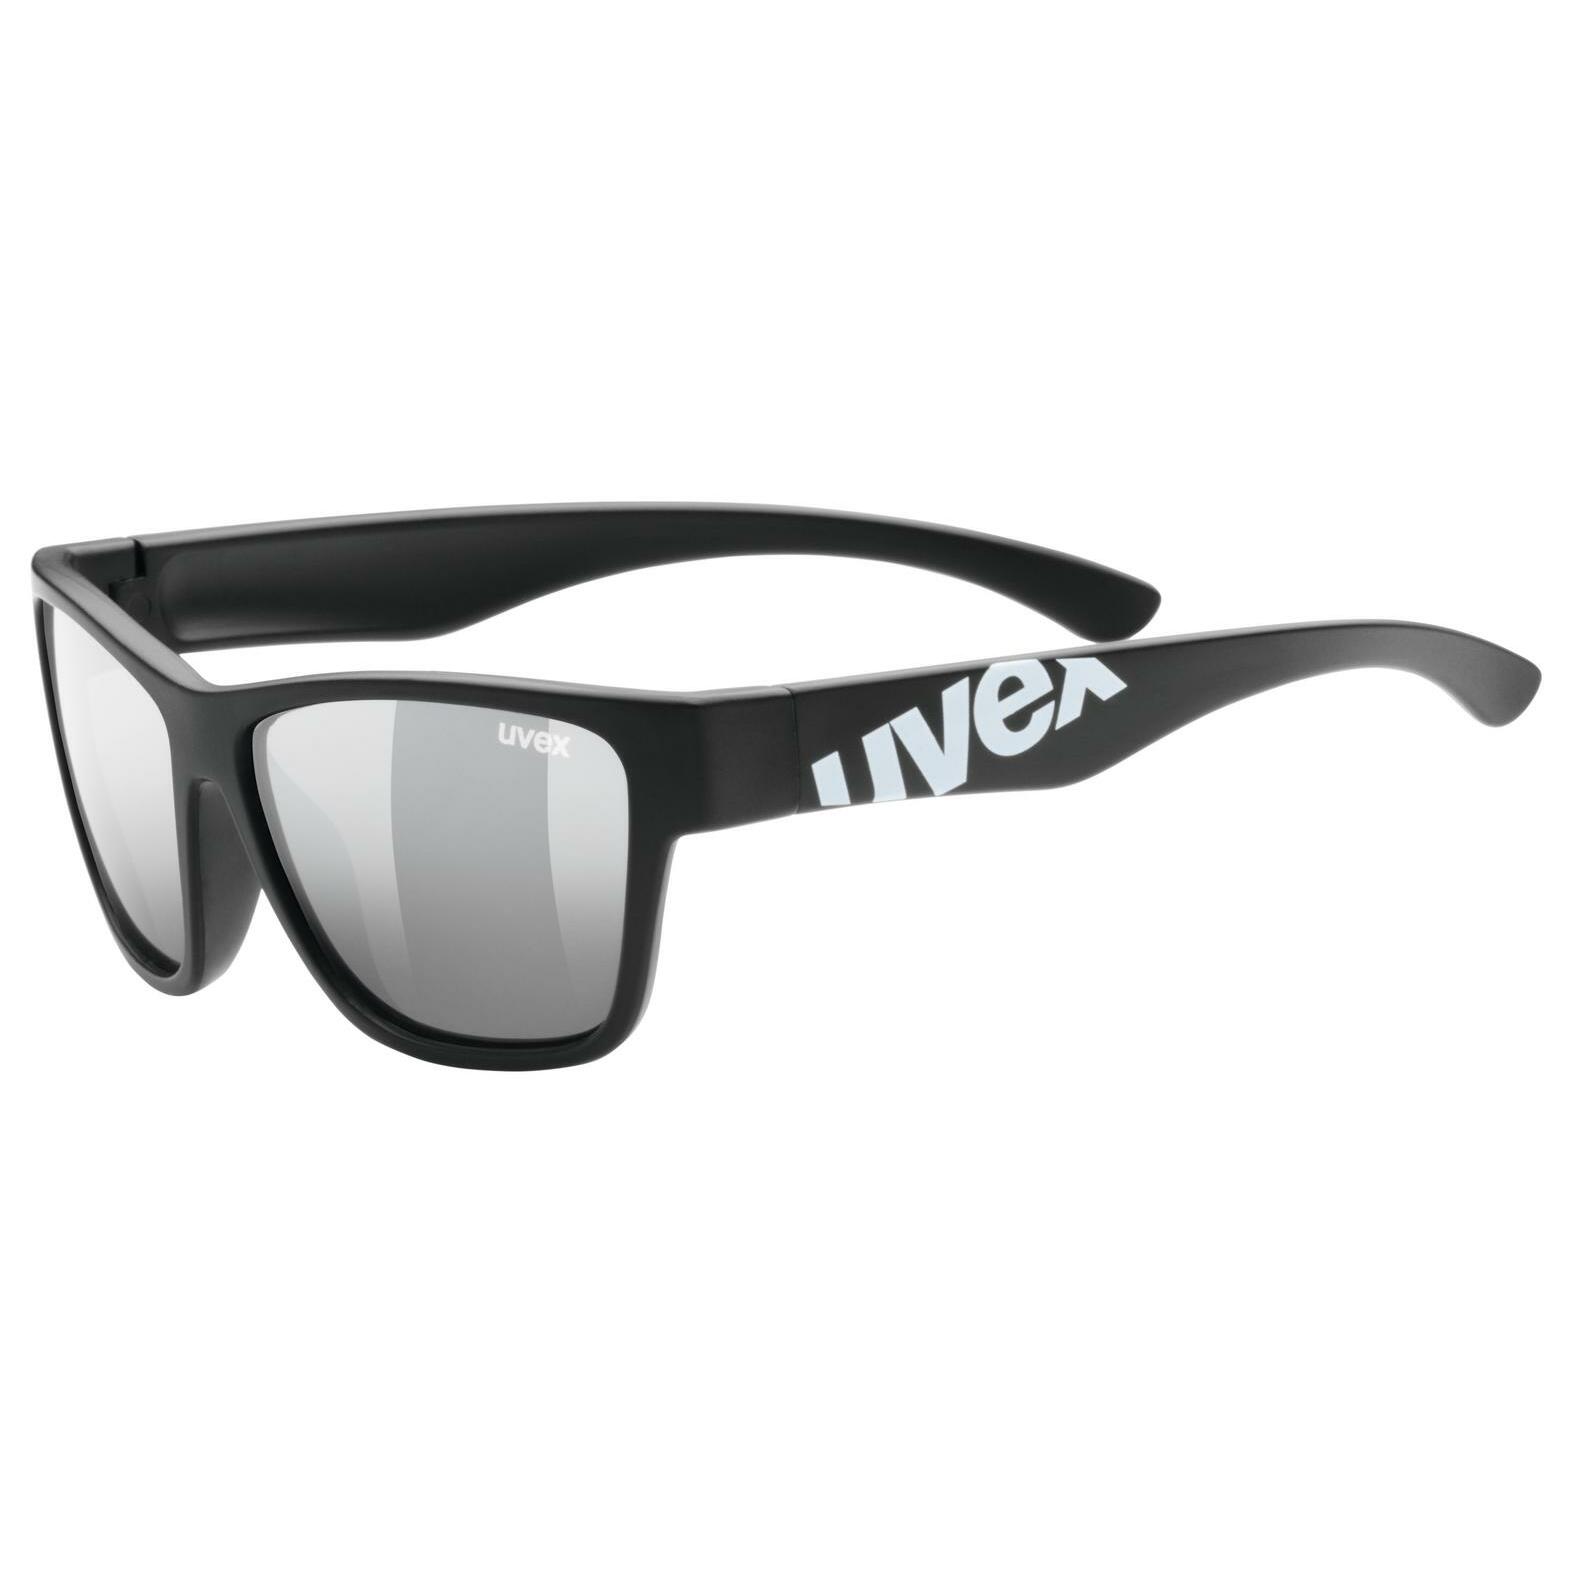 UVEX Sport style 508 Sport gafas de gafas de sol niños protección ultravioleta gafas s53389593 